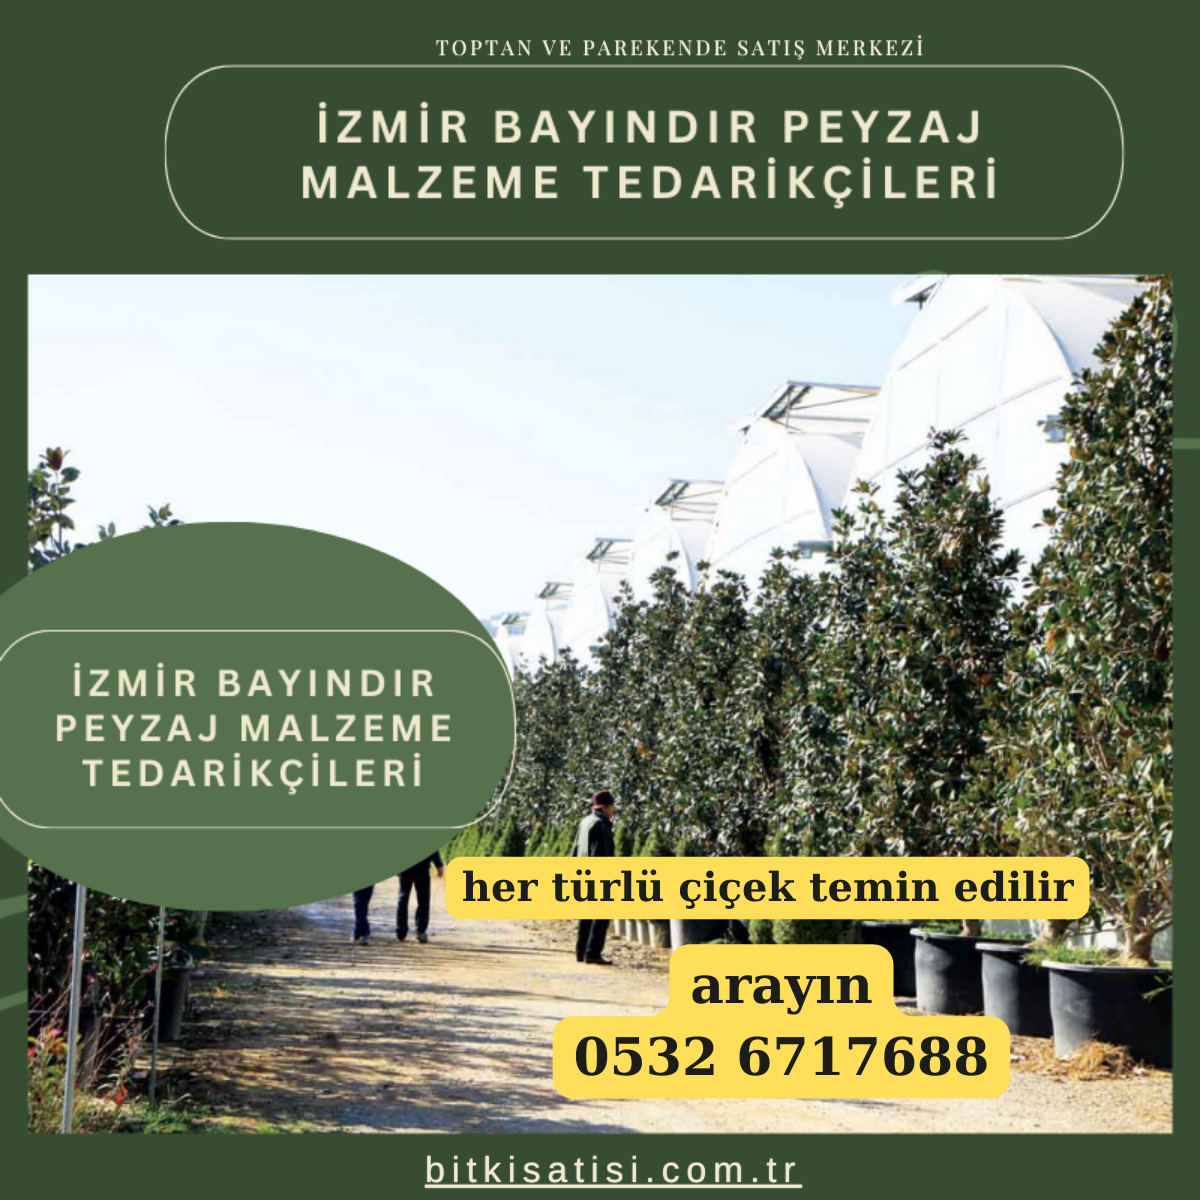 İzmir Bayındır Peyzaj Malzeme Tedarikçileri